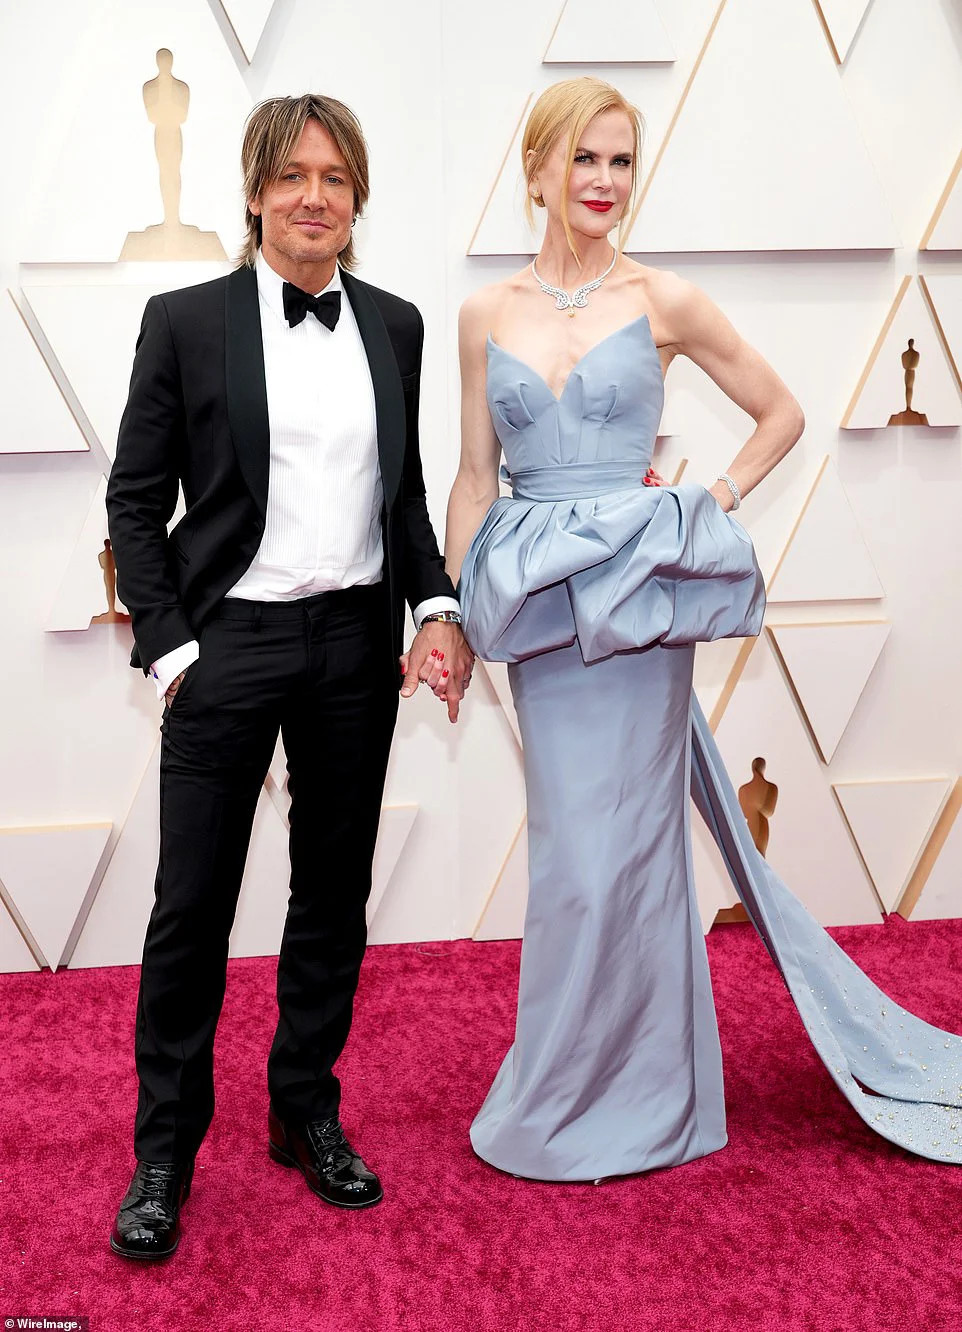 Minh tinh Nicole Kidman được chồng Keith Urban hộ tống trên thảm đỏ. Ứng viên hạng mục Nữ chính xuất sắc khoe vẻ đẹp sang trọng trong bộ váy xẻ ngực của Armani Privé.